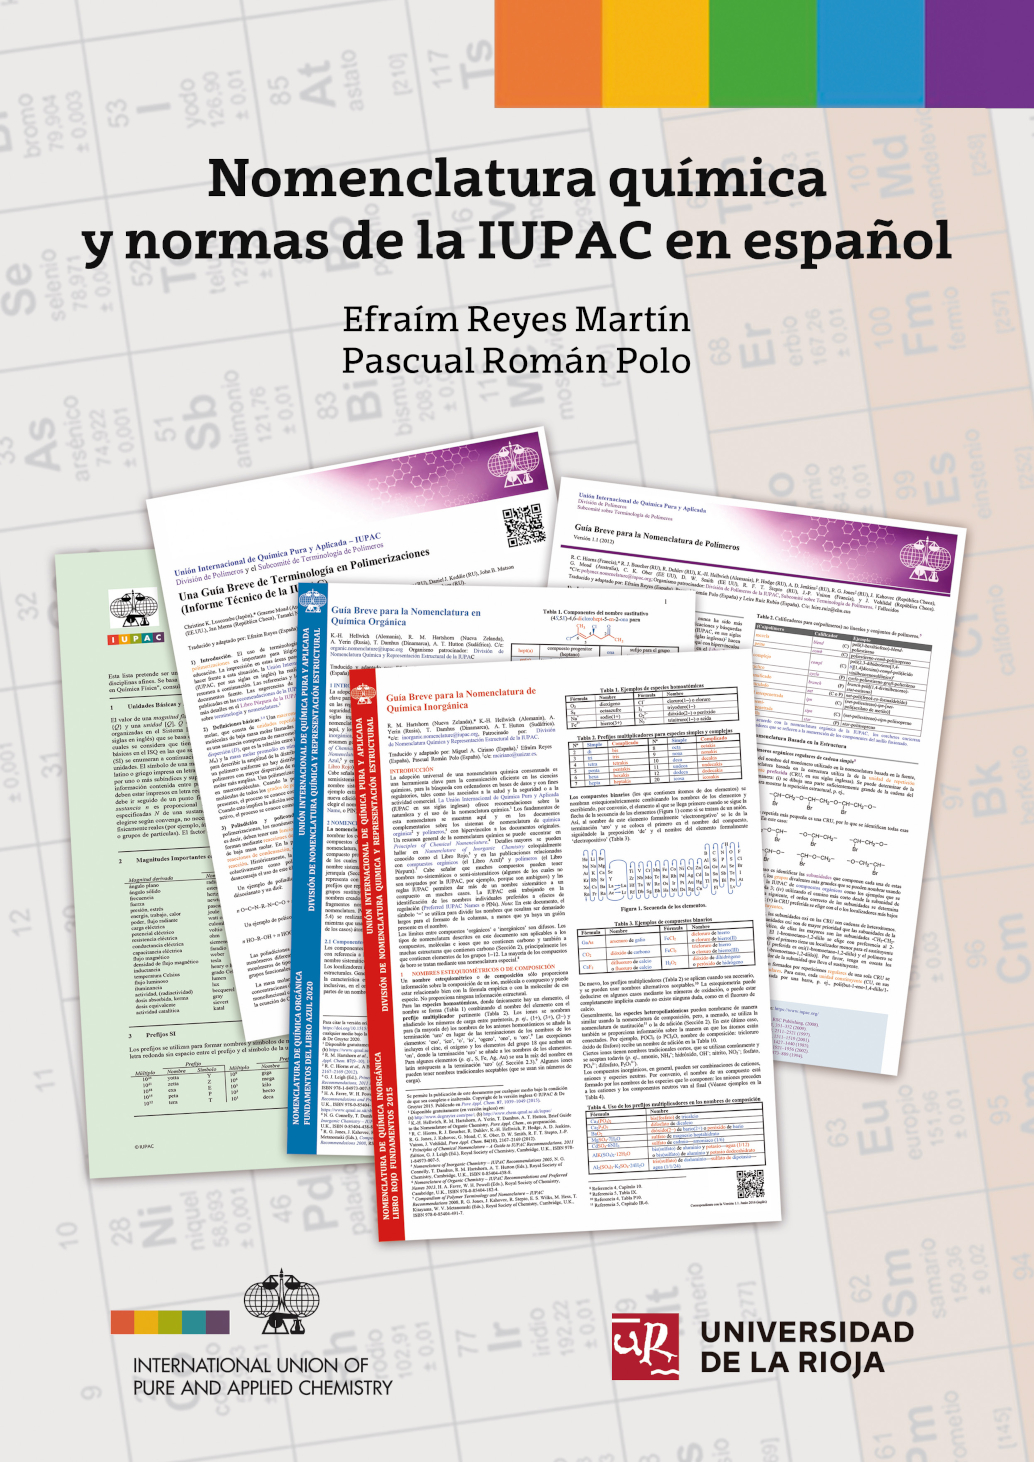 Imagen de portada del libro Nomenclatura química y normas de la IUPAC en español